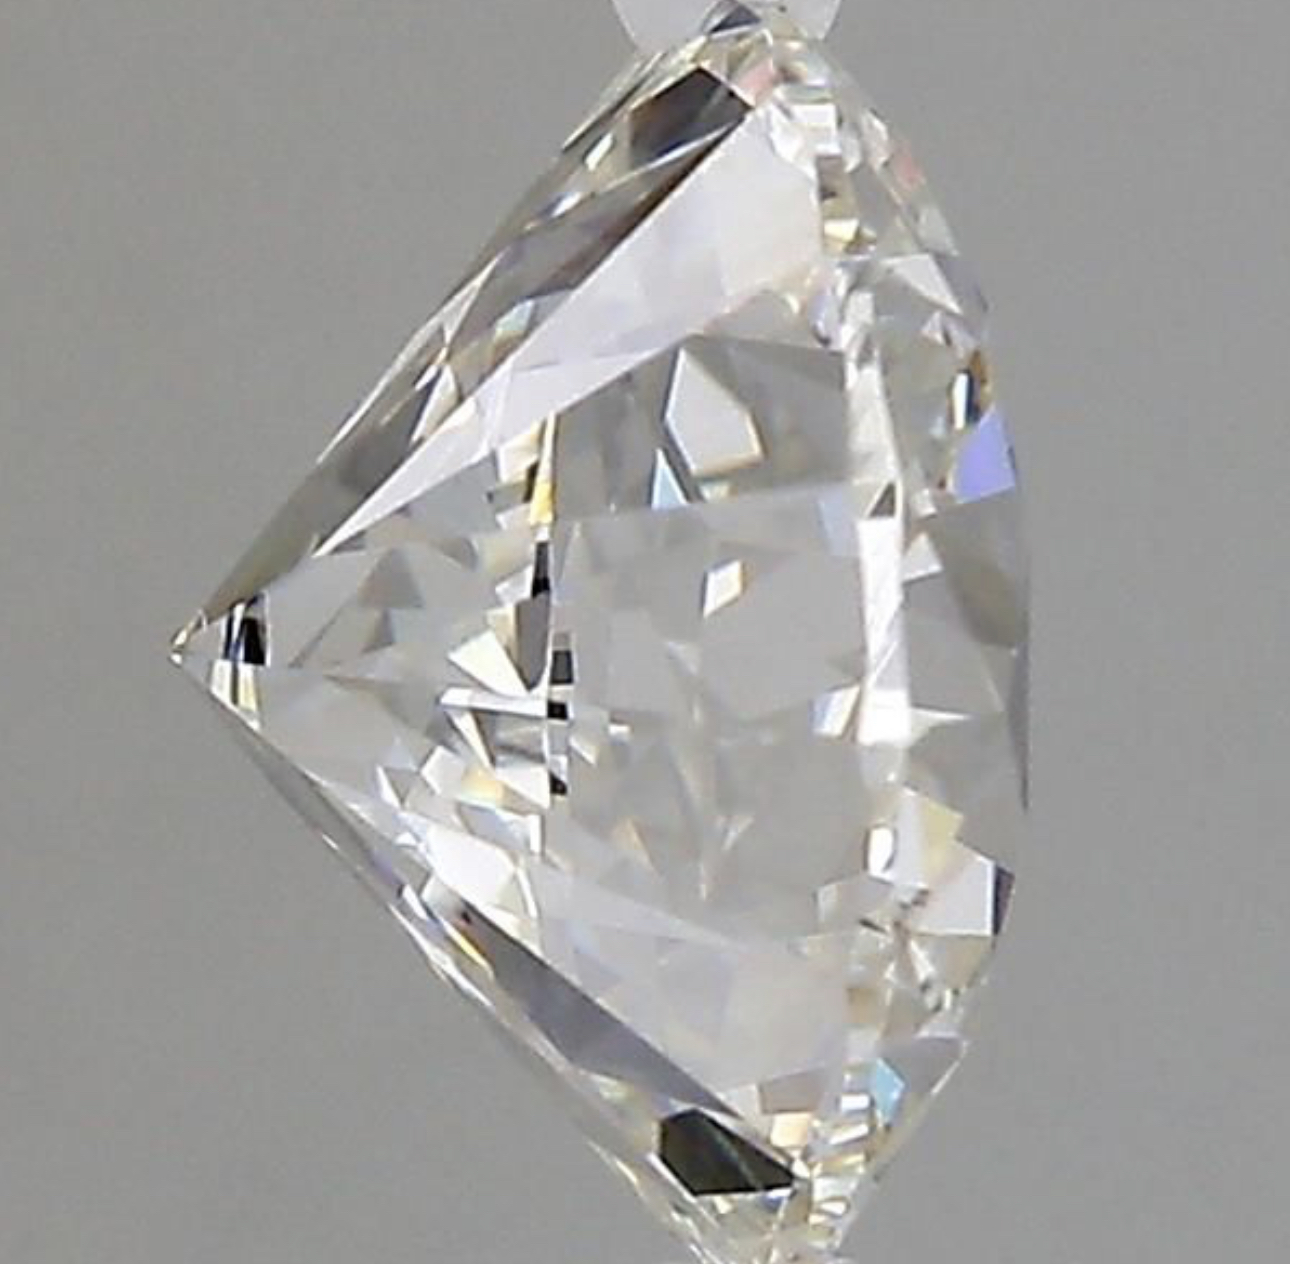 Round Brilliant Cut Diamond F Colour VVS2 Clarity 2.13 Carat EX EX - 7441888947 - GIA - Image 8 of 10